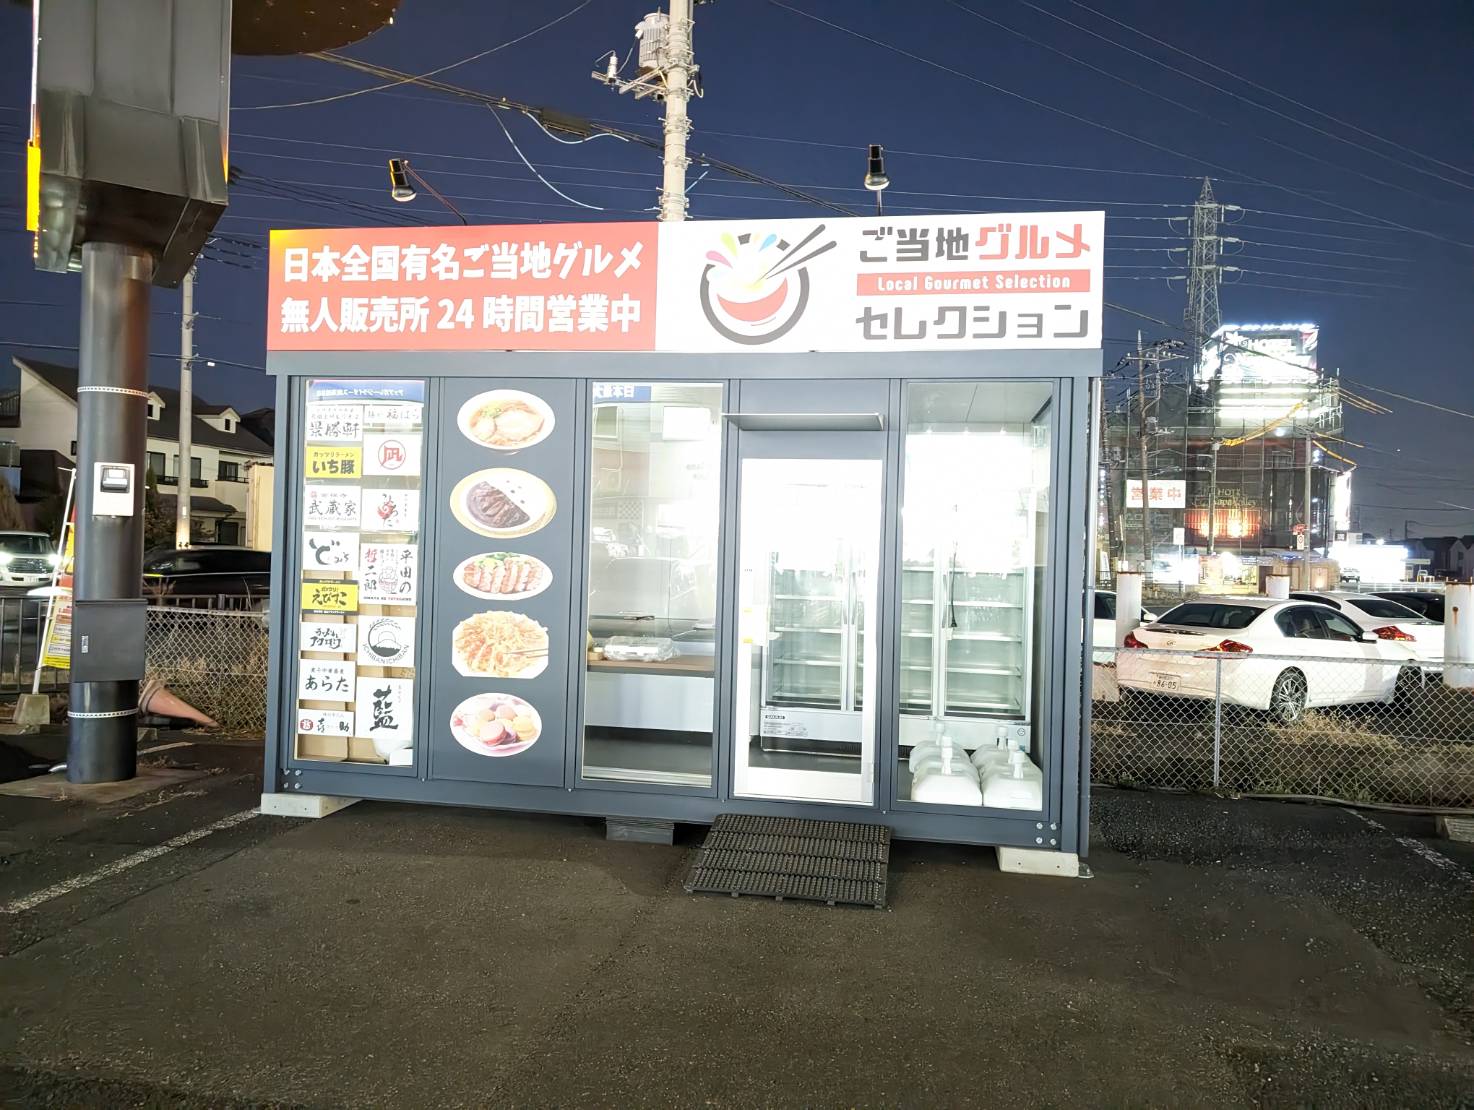 日本全国のご当地グルメが購入できる無人販売所！ドン・キホーテ越谷店の駐車場内に「ご当地グルメセレクション」が出来るみたいです！【がやてっく開店】